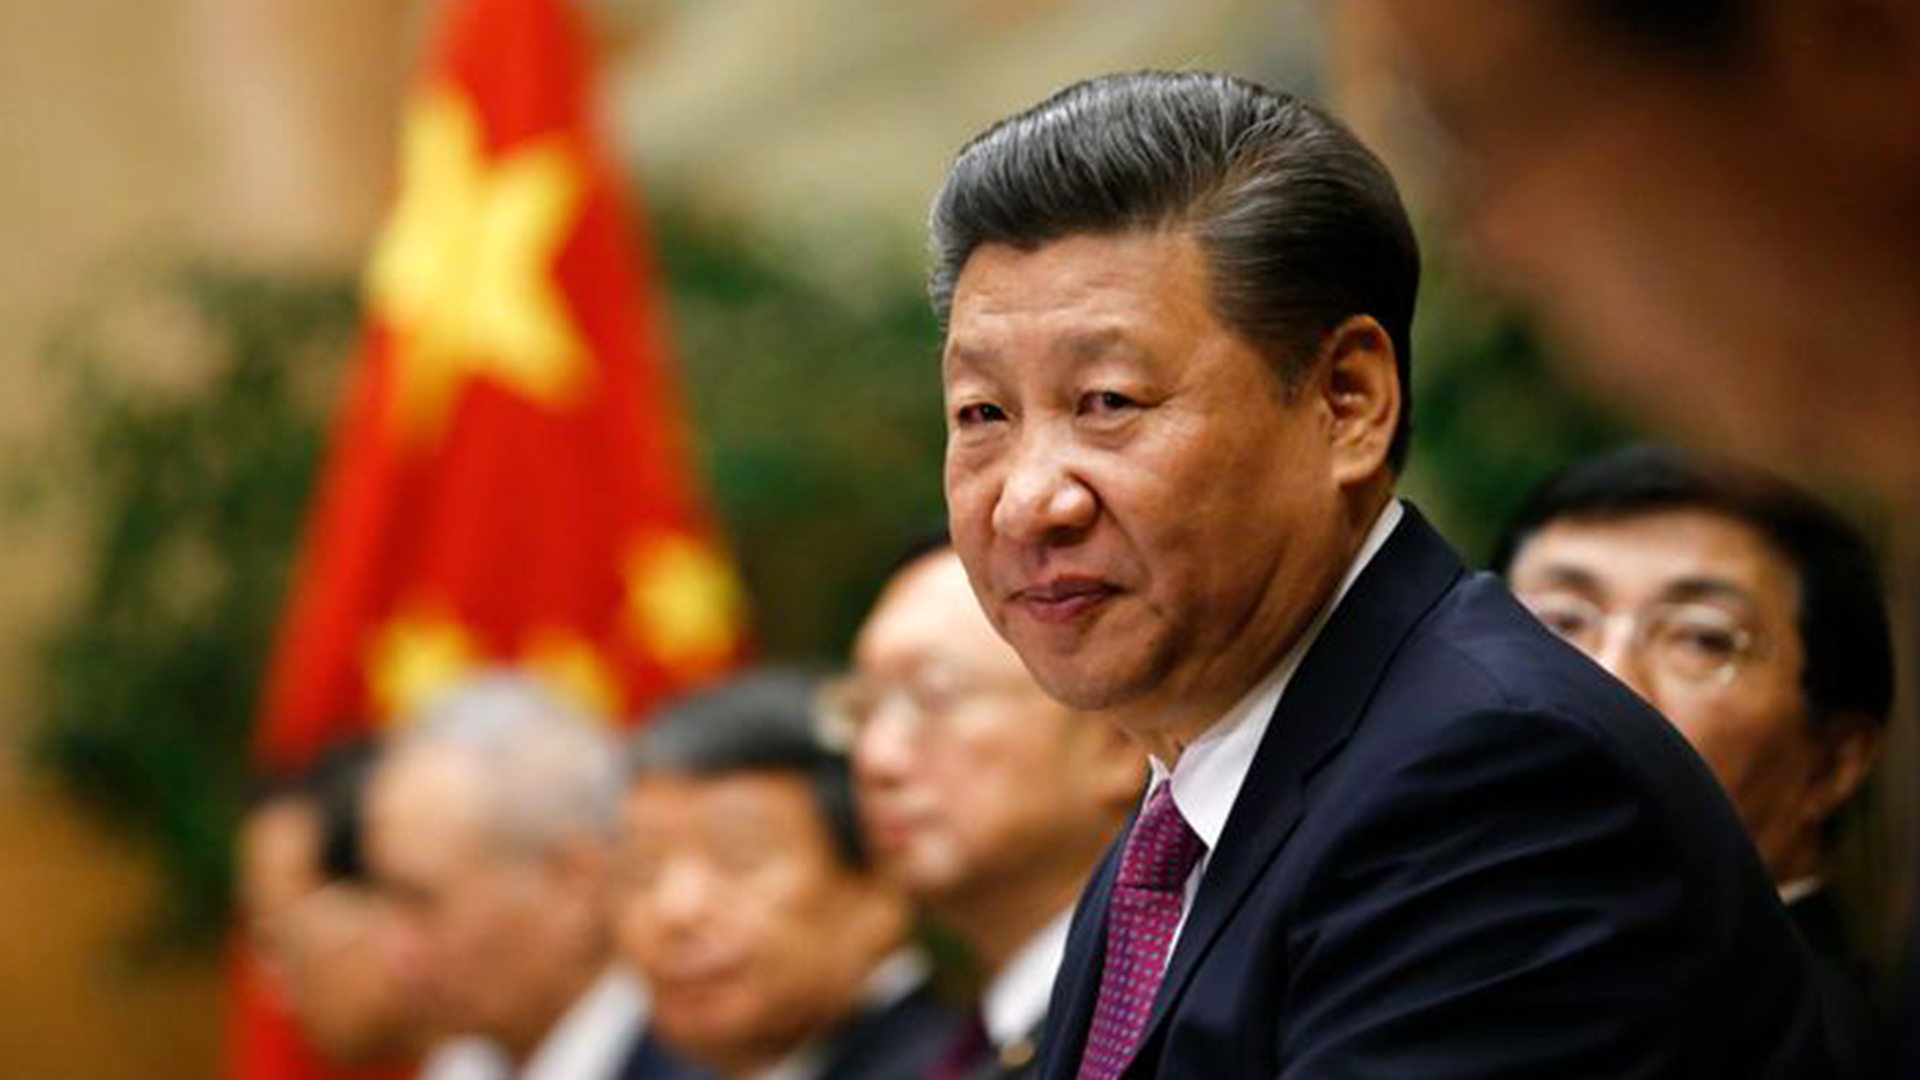 El régimen de Xi Jinping es señalado por violar los derechos humanos y las normas laborales internacionales. (REUTERS/Denis Balibouse)